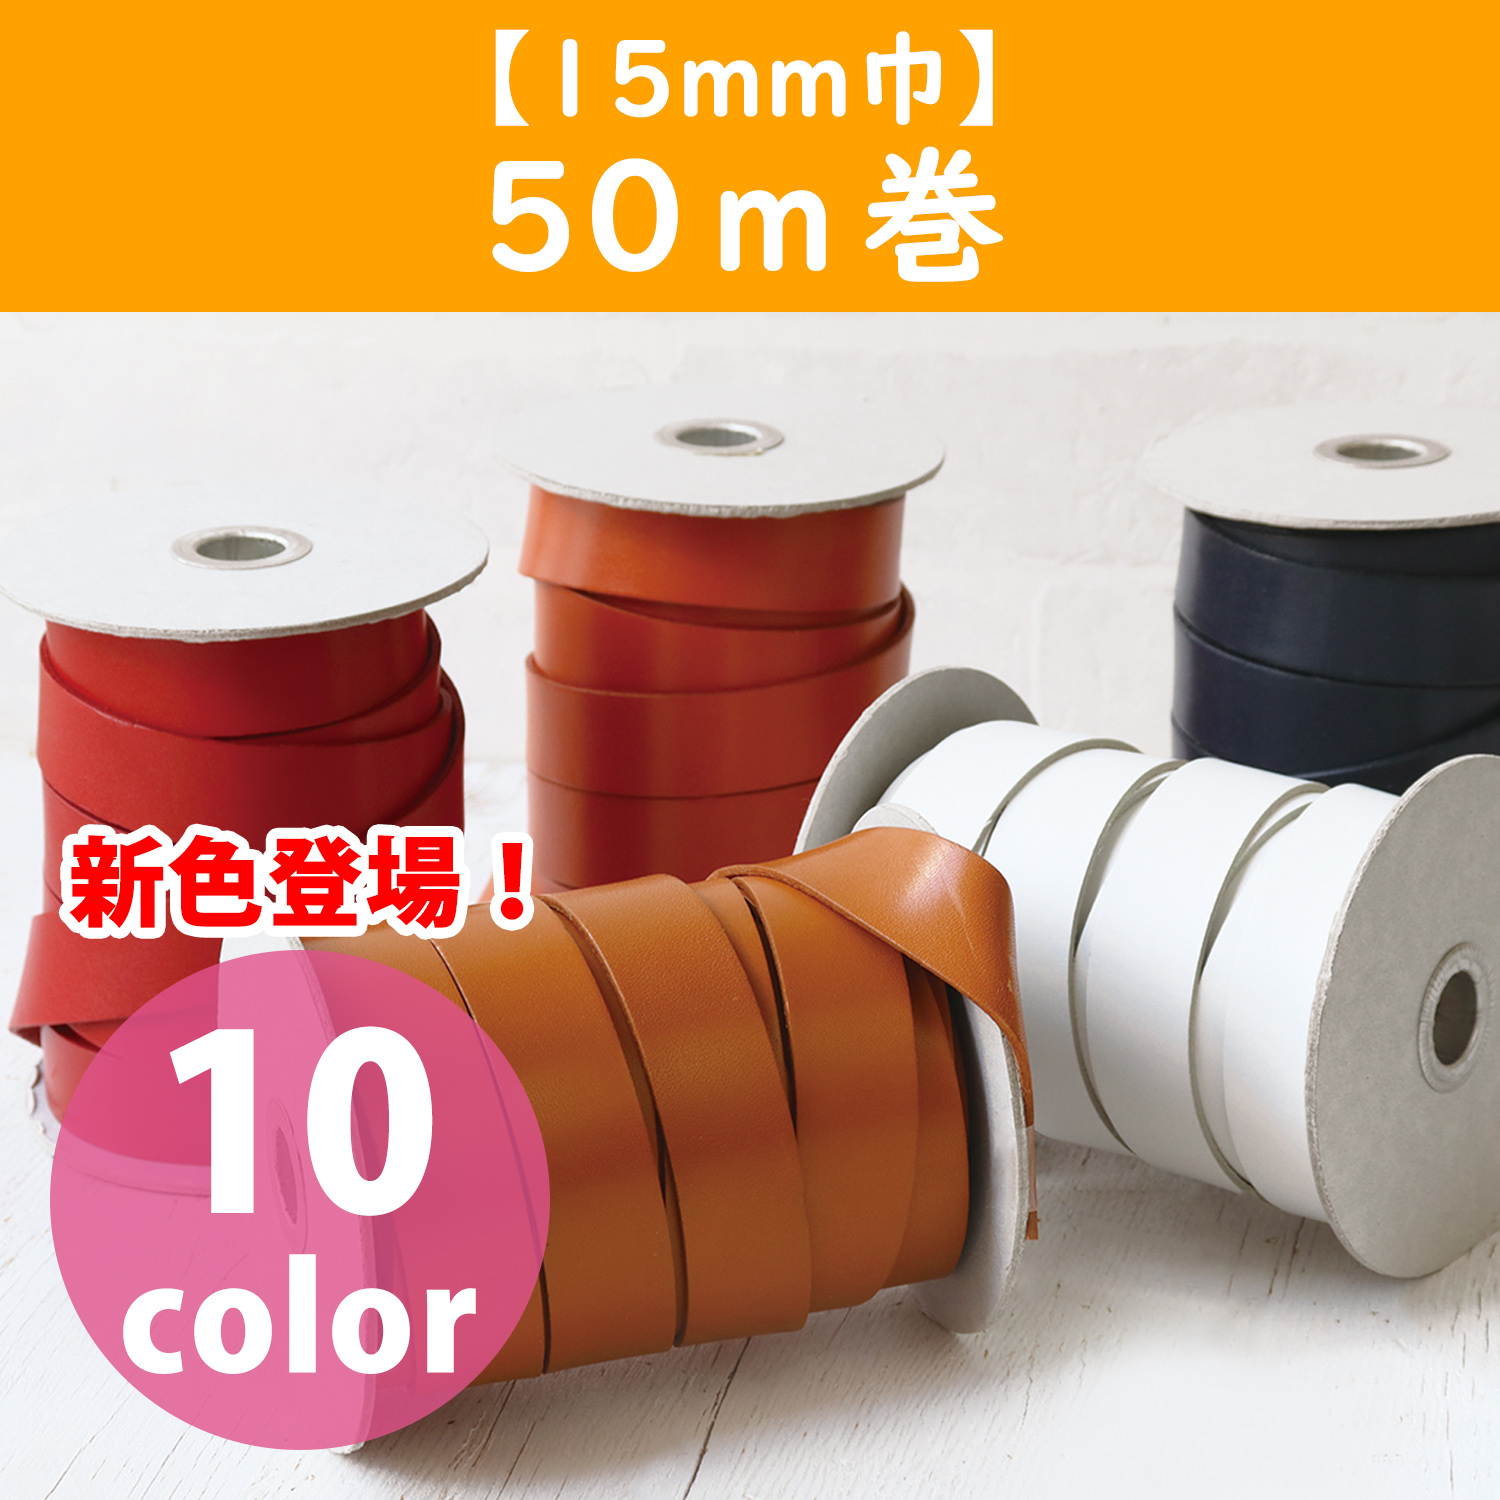 MTLS1015-50M ヌメ革テープ 15mm巾 50m巻 (巻)